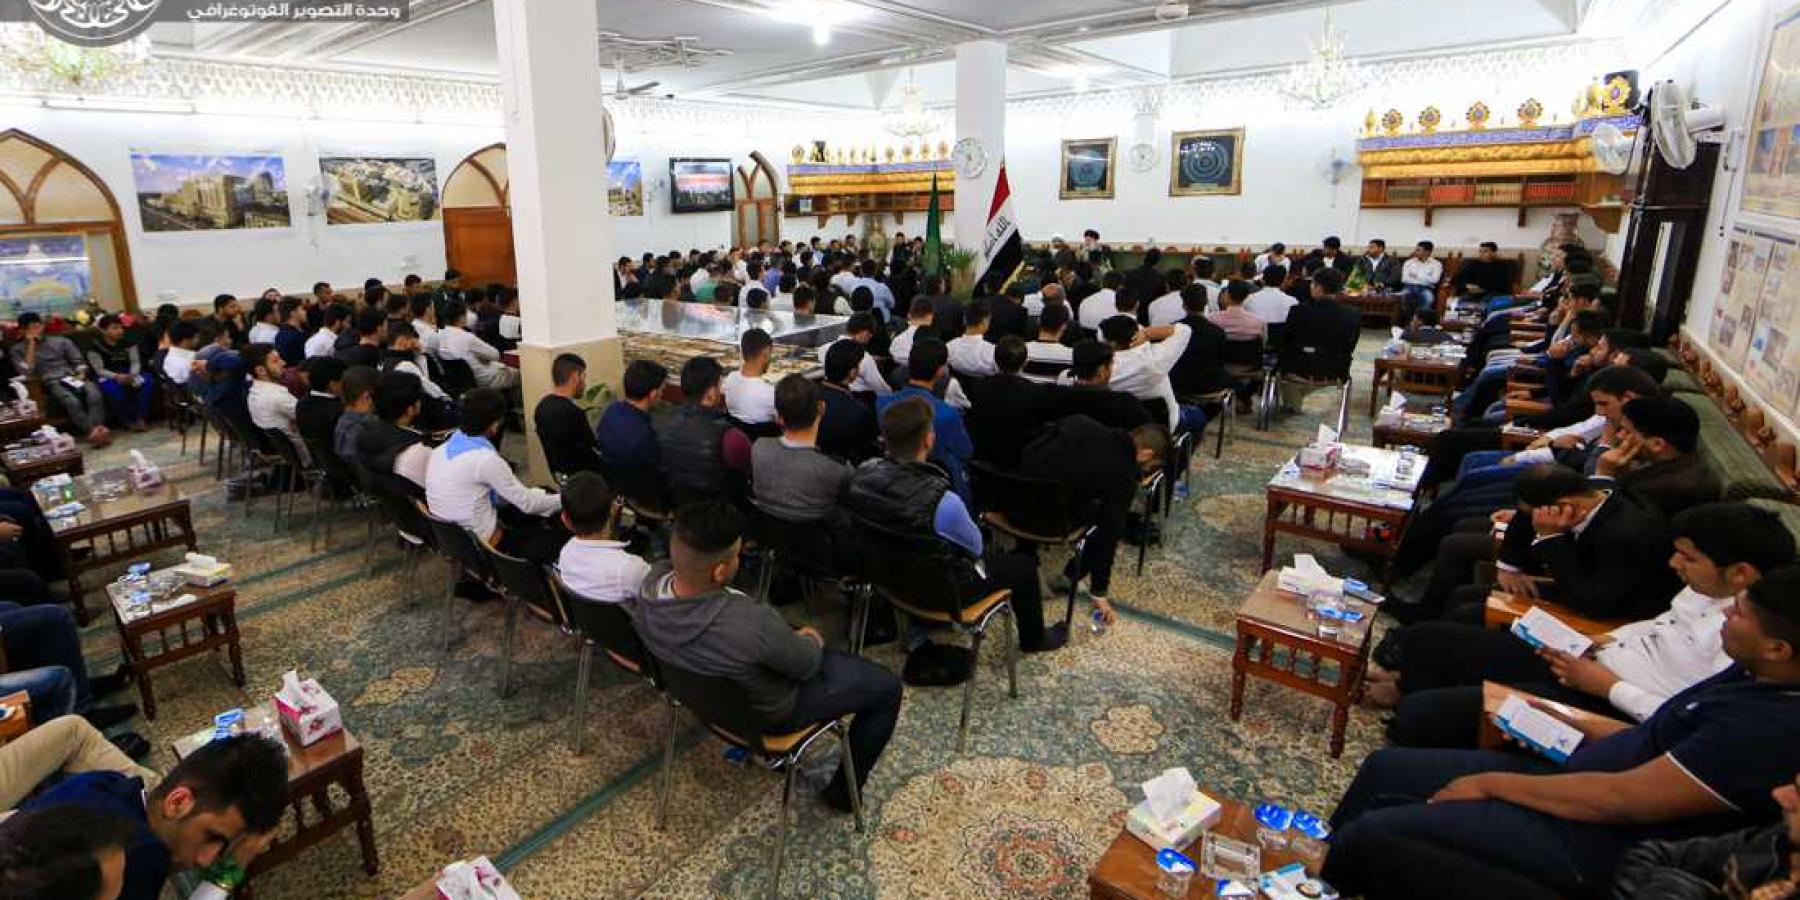 العتبة العلوية المقدسة تحتضن آلاف الطلبة من مختلف الجامعات العراقية برعاية المرجعية الدينية العليا في النجف الأشرف